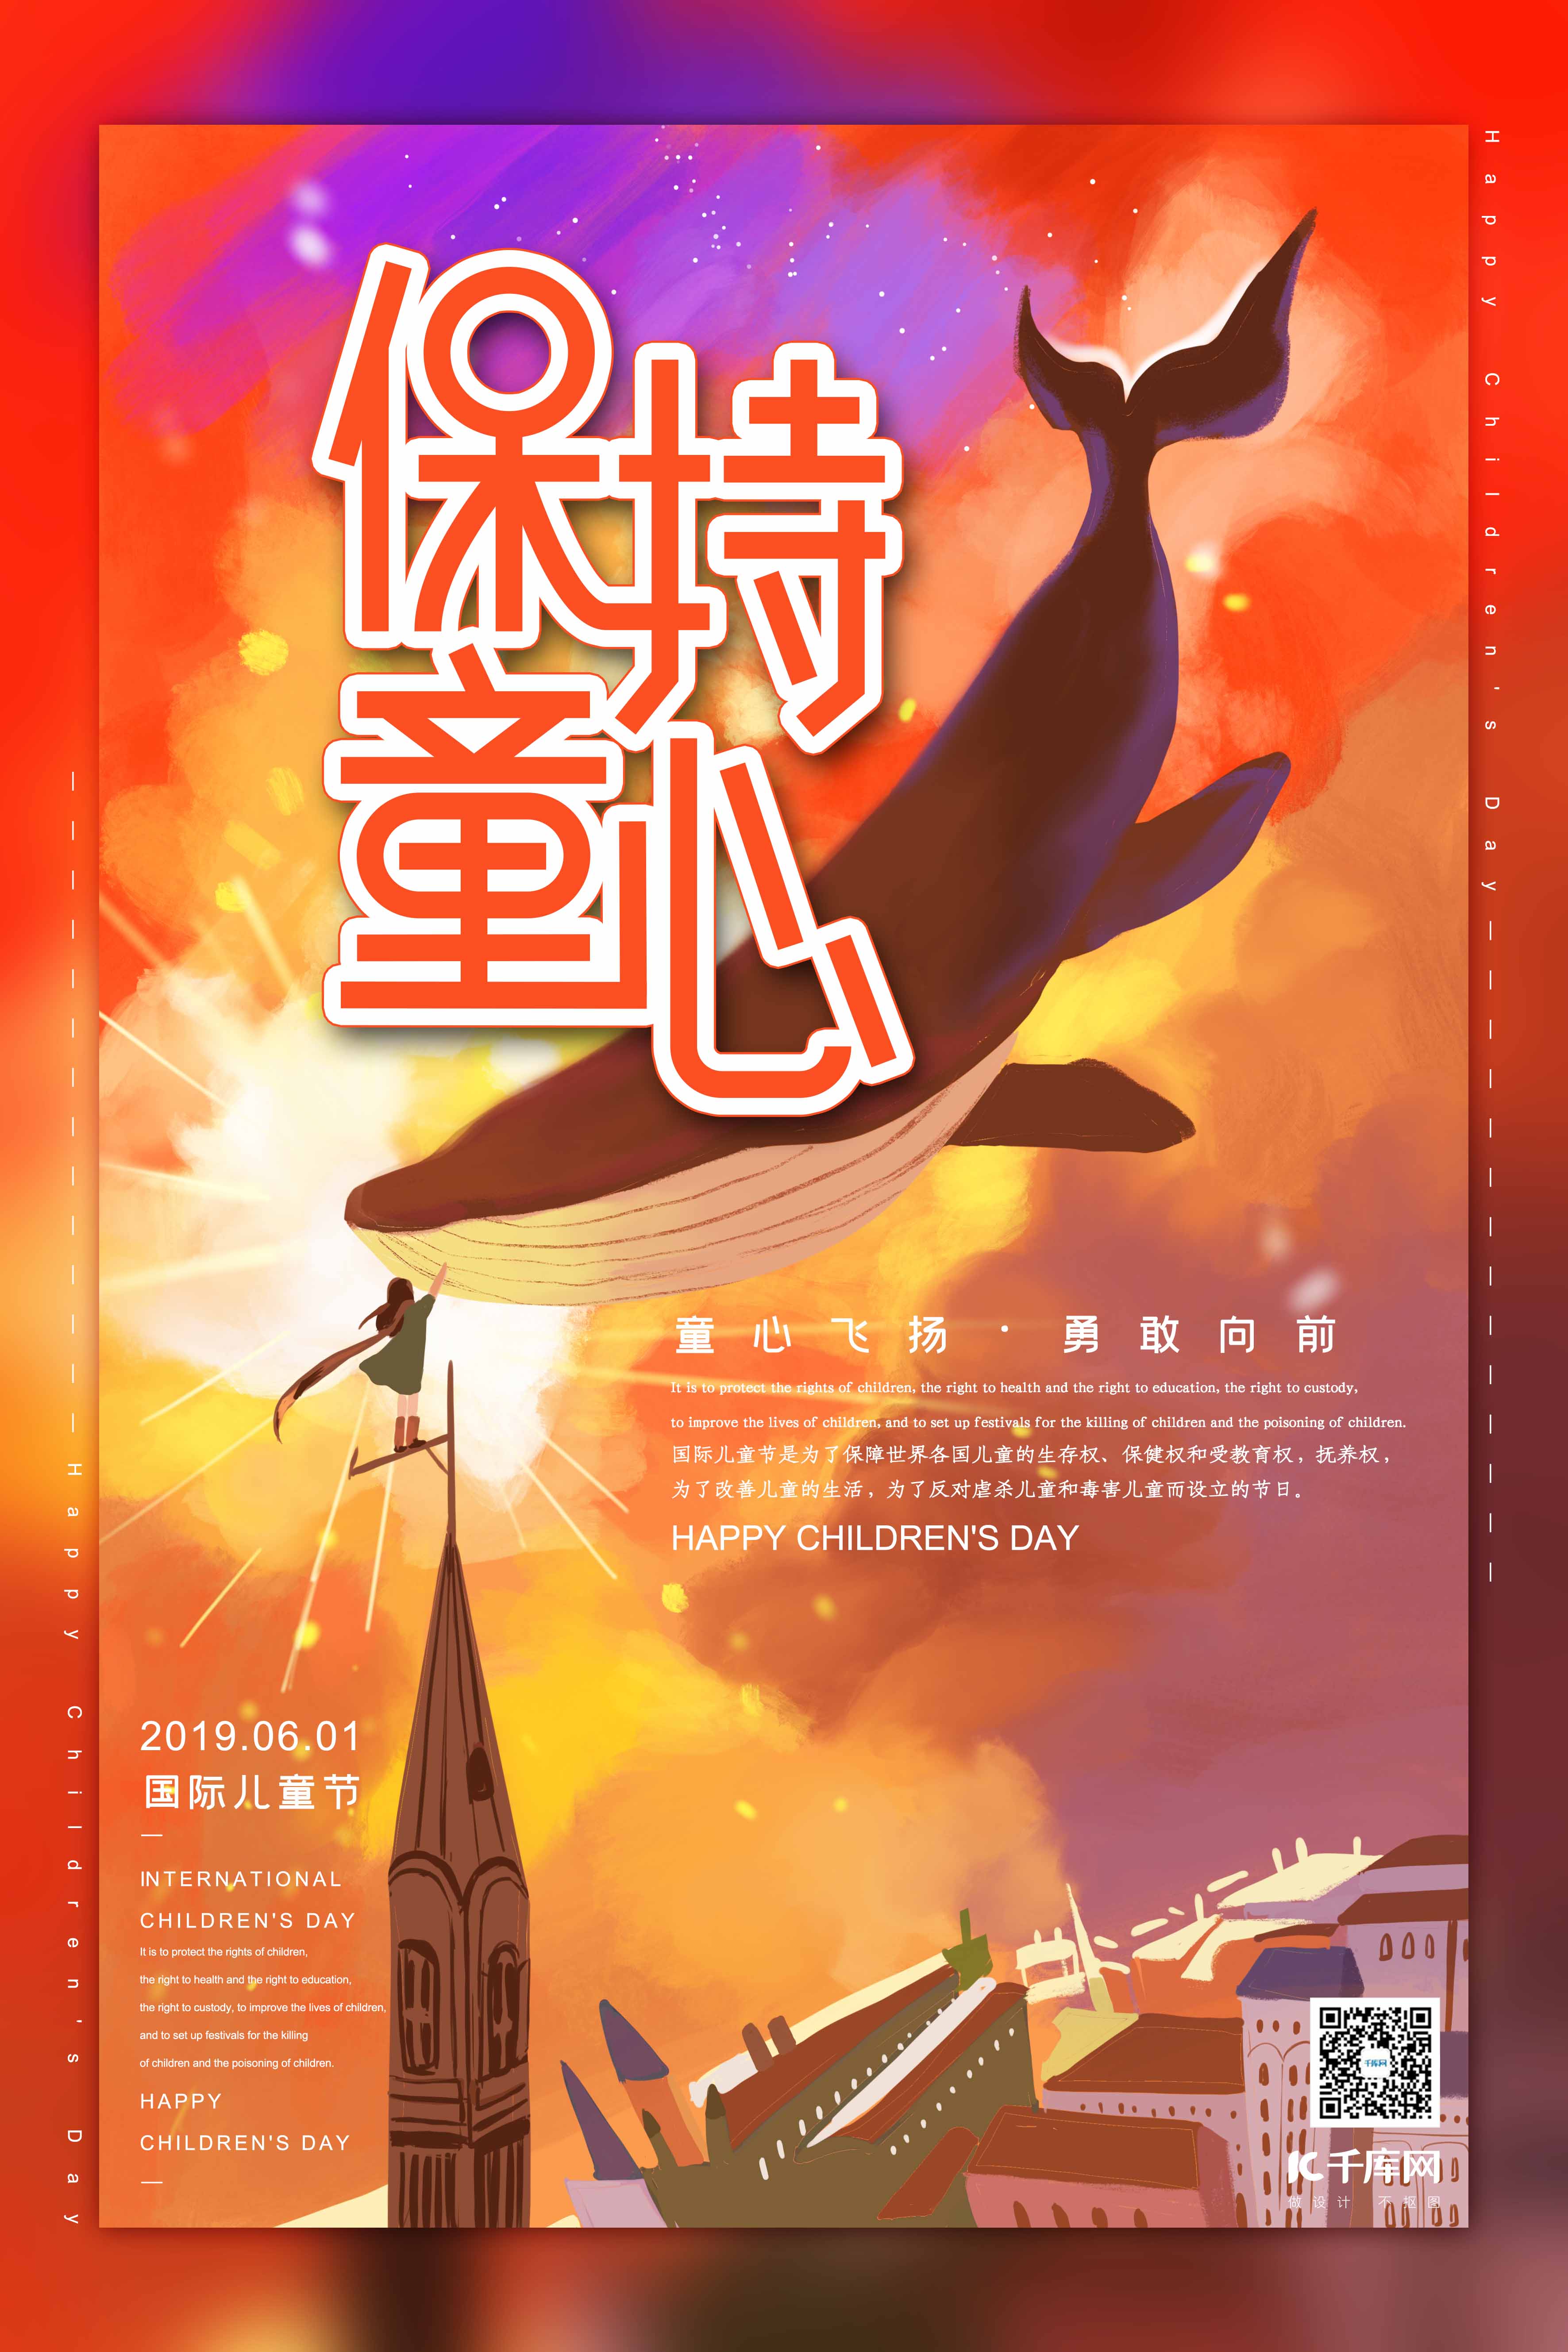 保持童心六一儿童节红色星空鲸鱼系列梦幻插画风格海报图片